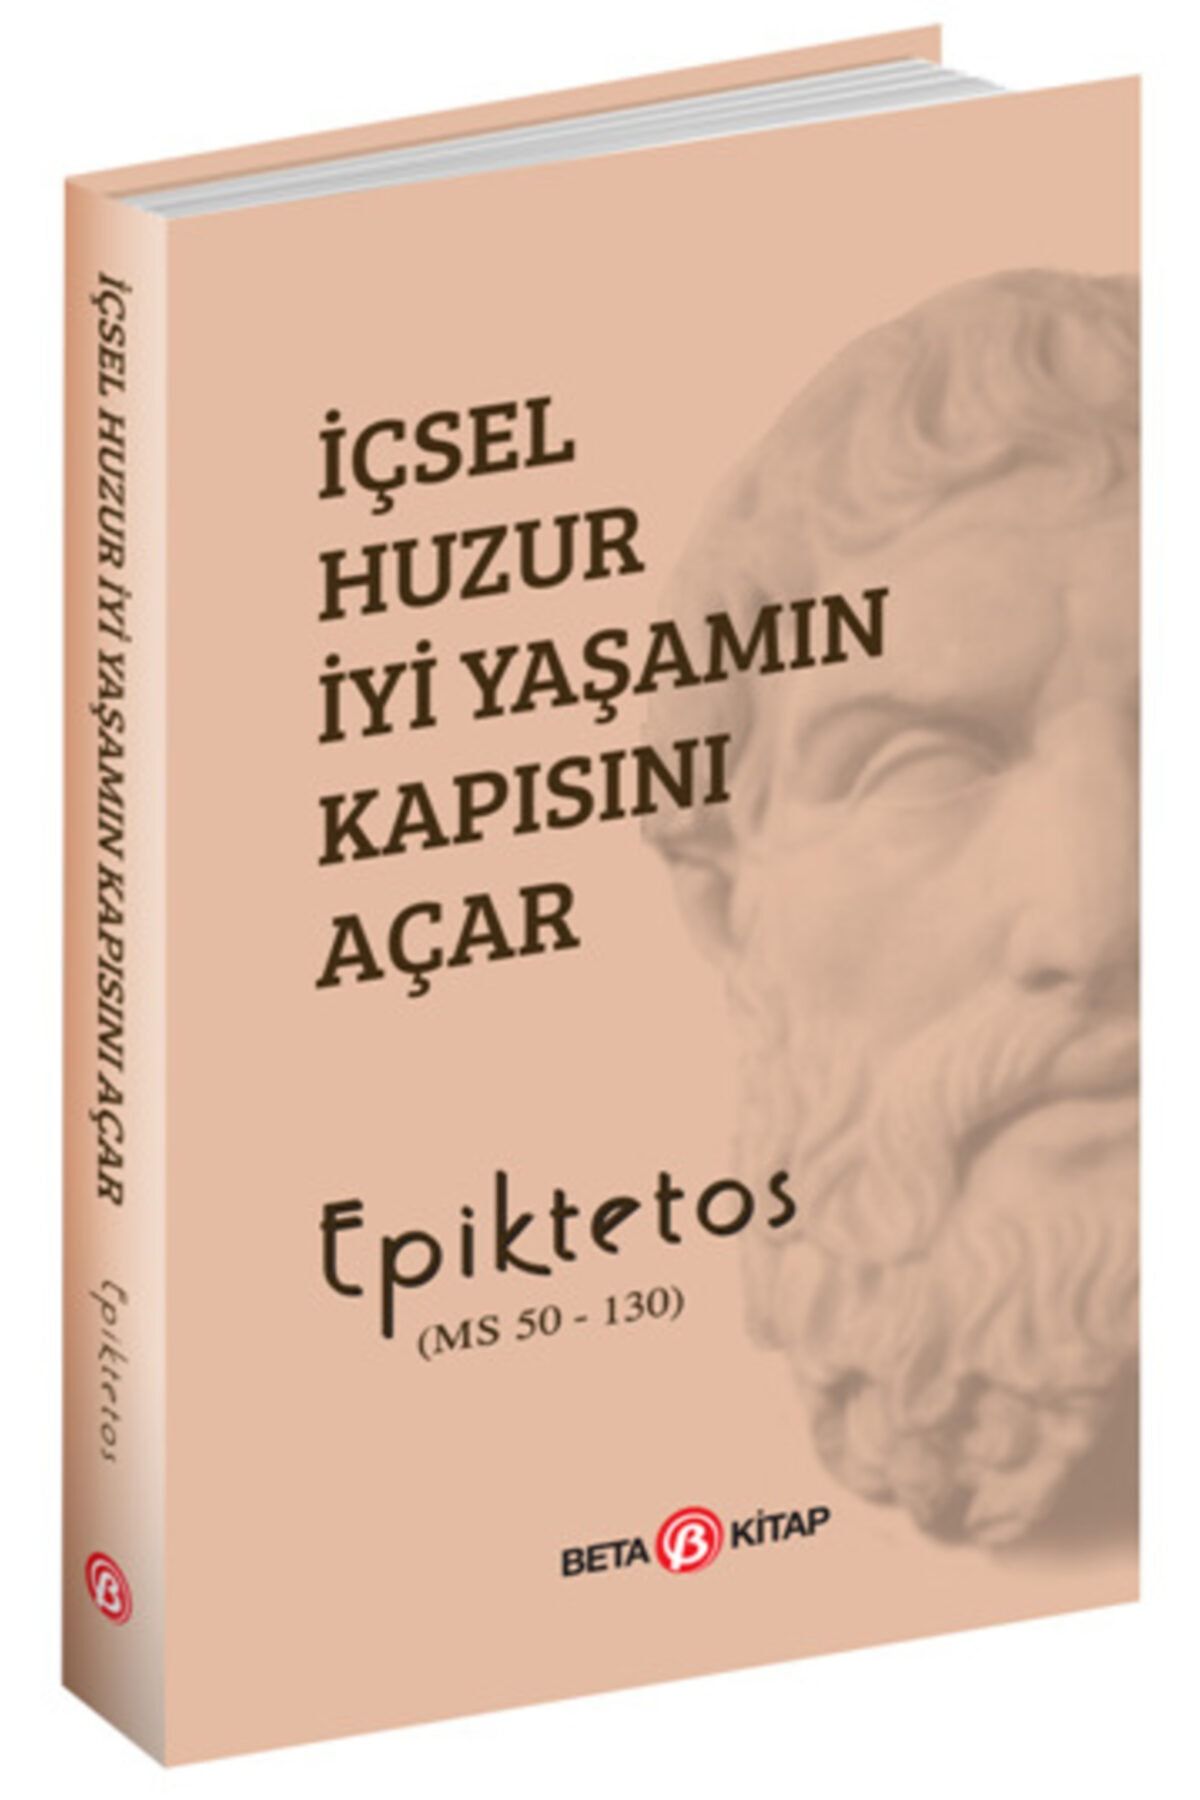 Beta Yayınları Içsel Huzur Iyi Yaşamın Kapısını Açar - Beta Yayınevi - Epiktetos Kitabı   Epiktetos